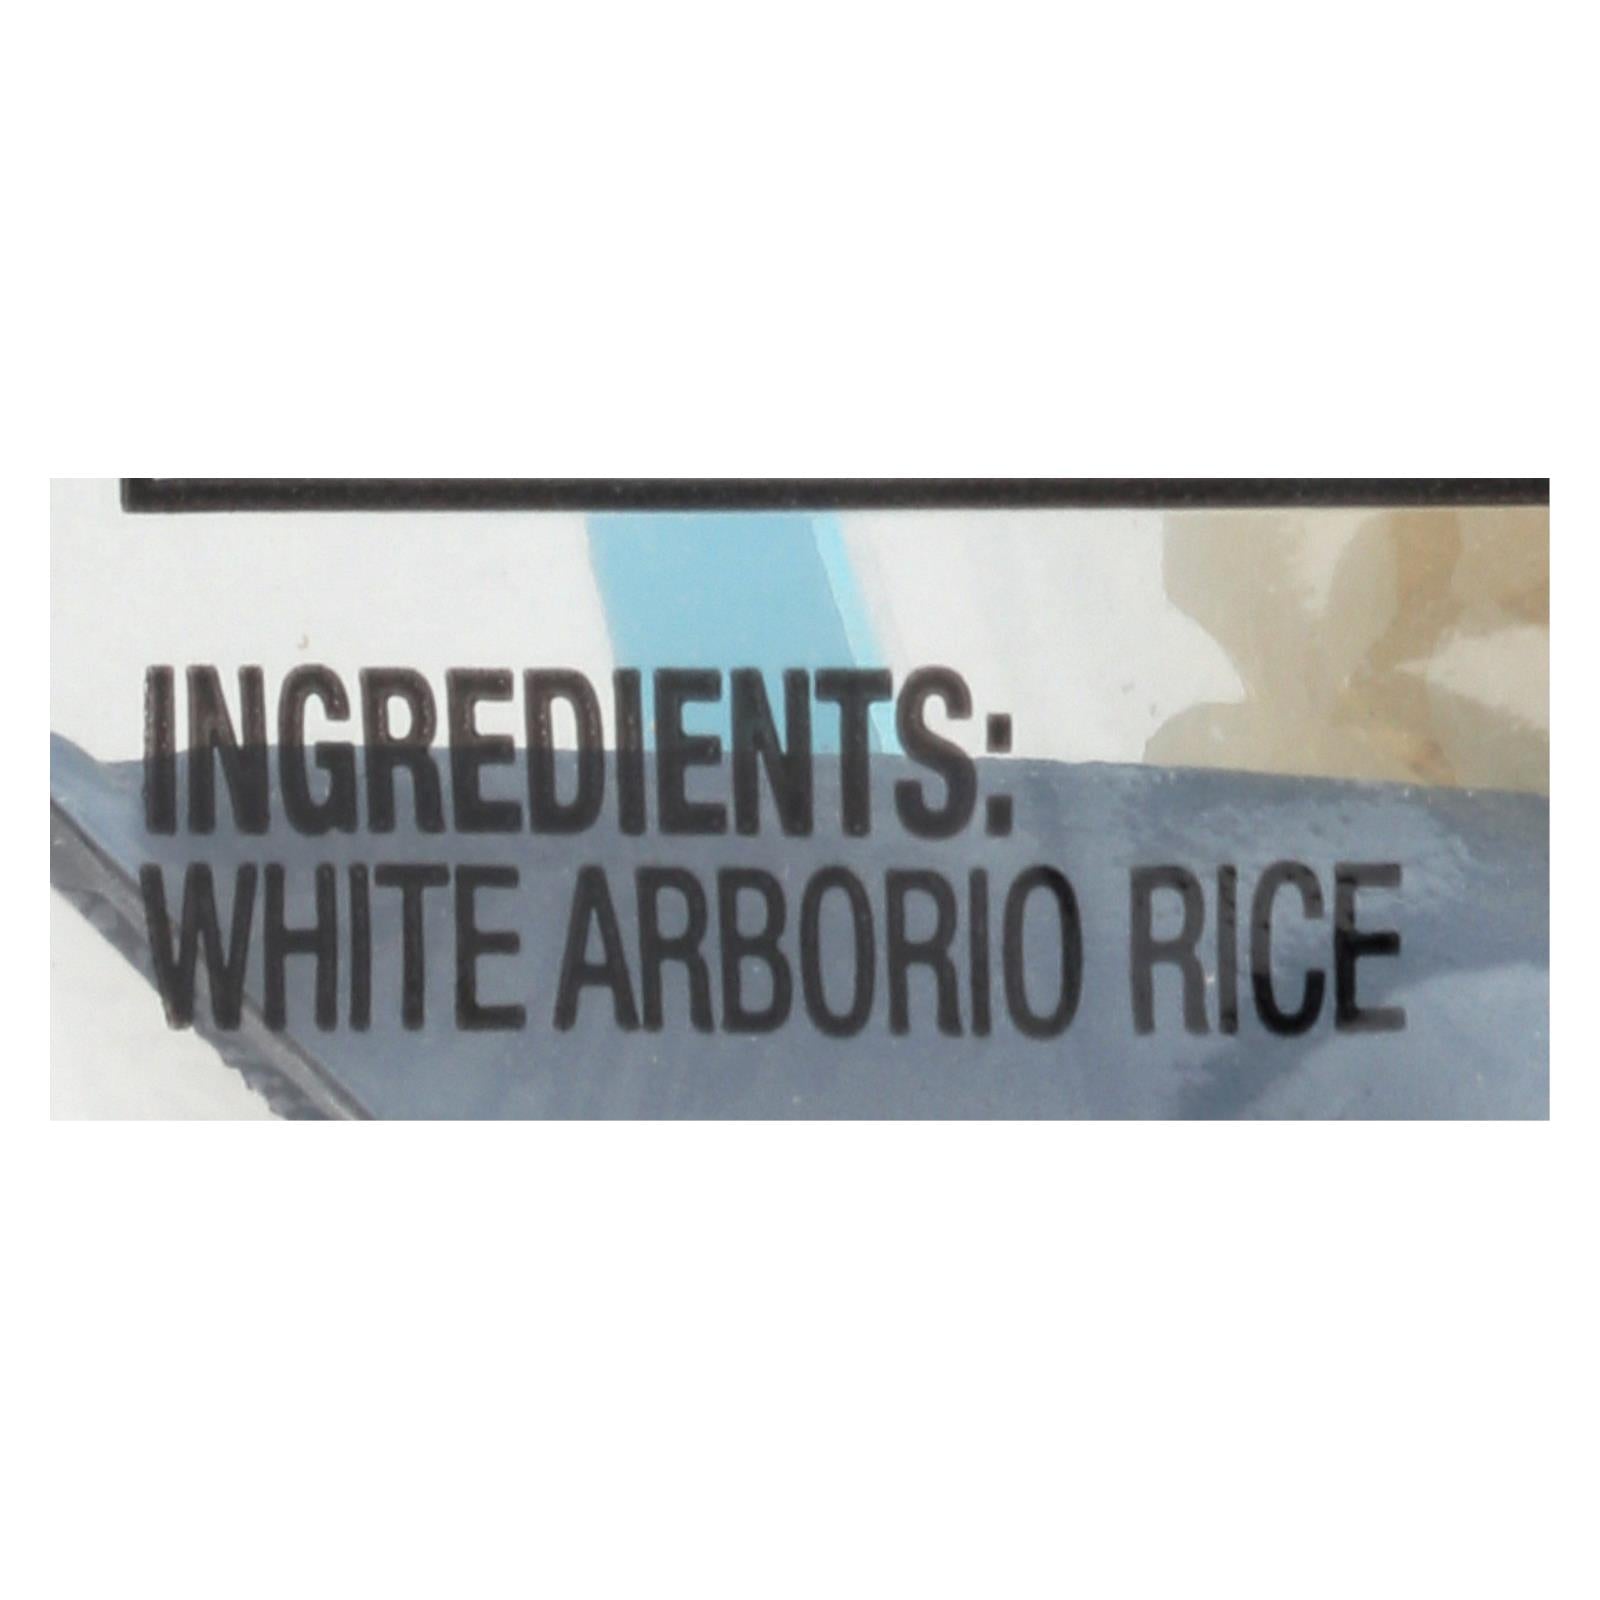 Della - Arborio White Rice - Case Of 6 - 28 Oz.